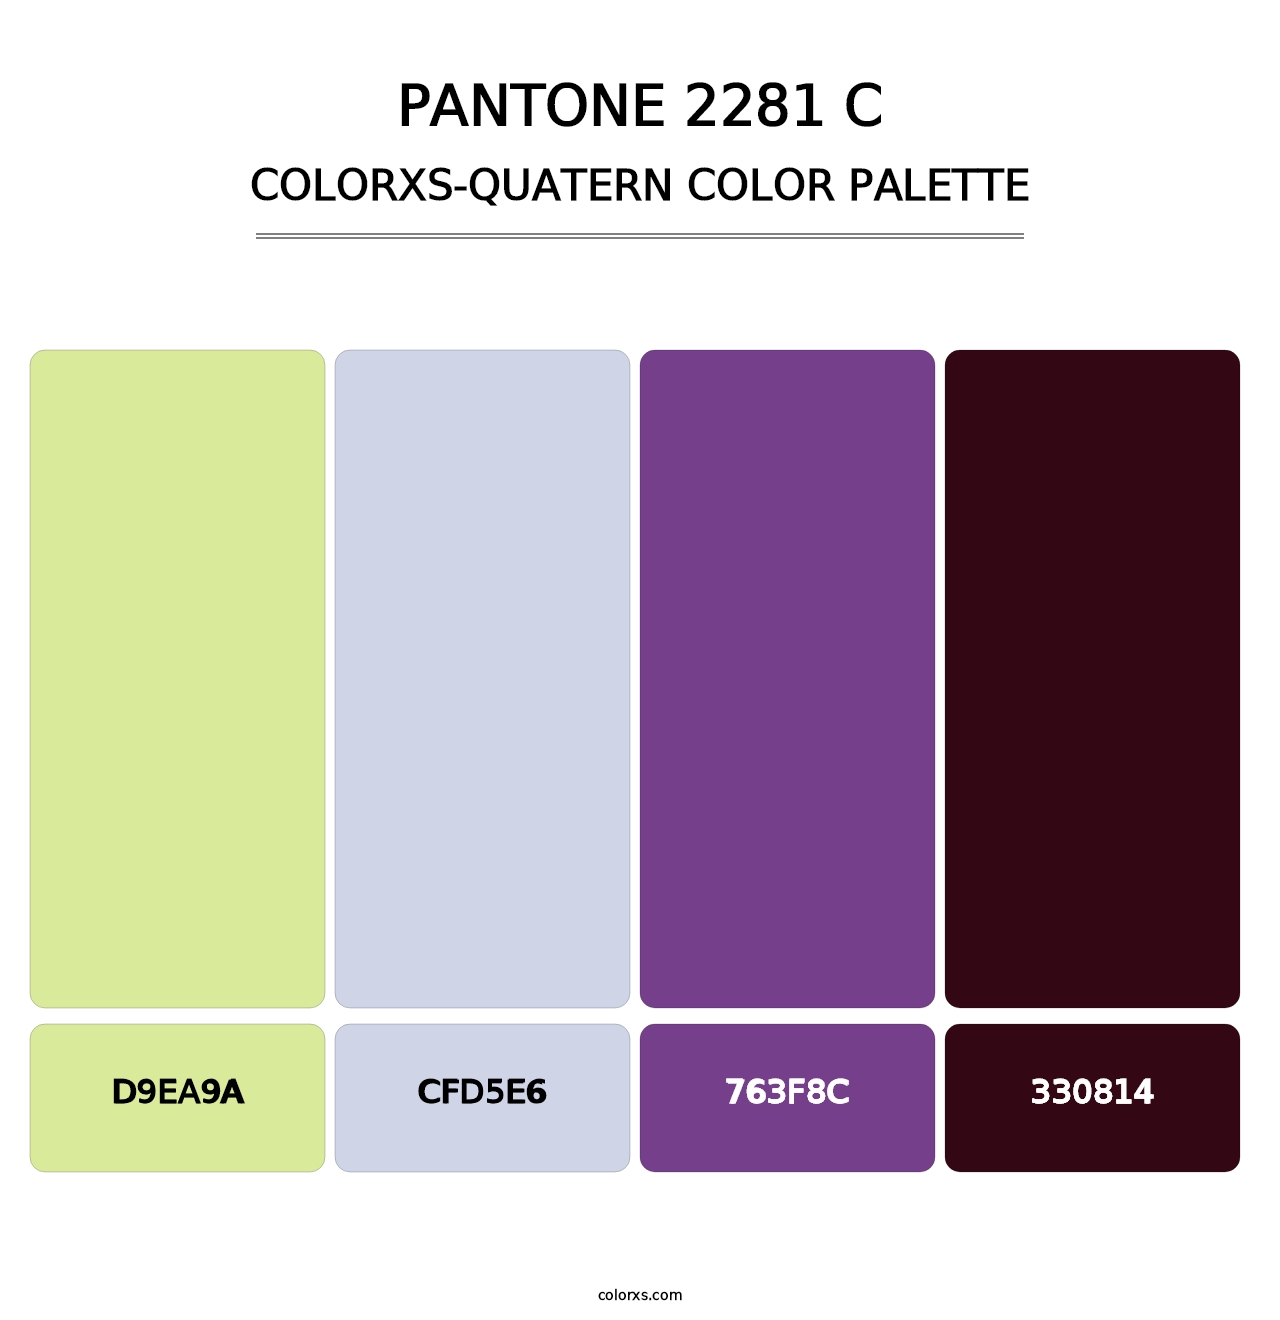 PANTONE 2281 C - Colorxs Quatern Palette